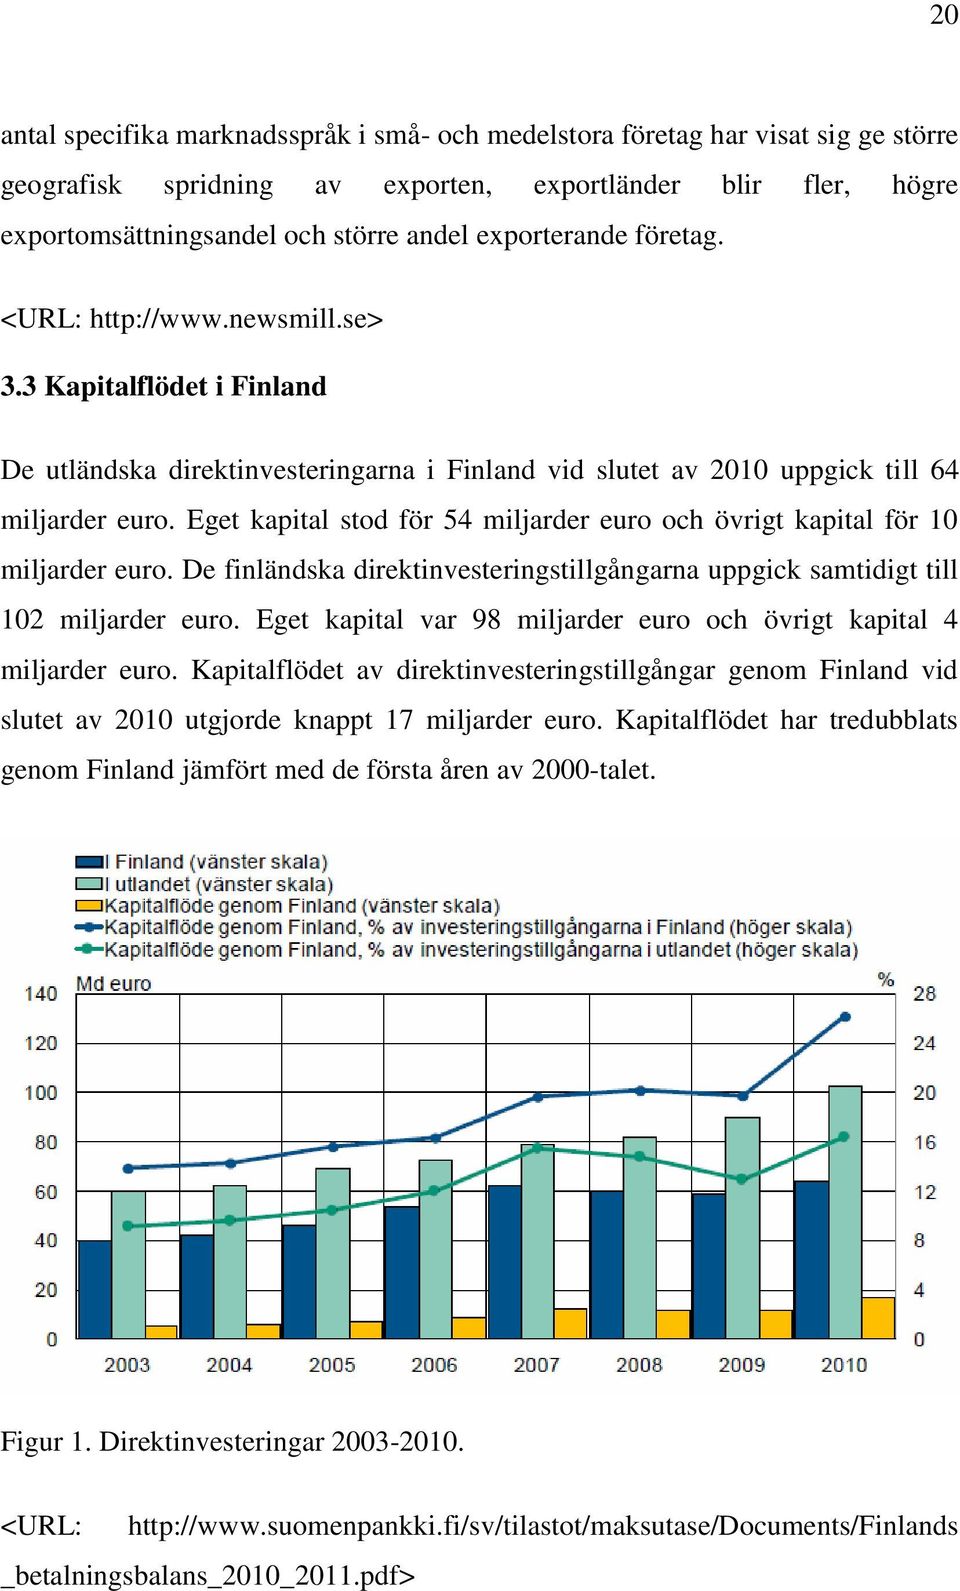 Eget kapital stod för 54 miljarder euro och övrigt kapital för 10 miljarder euro. De finländska direktinvesteringstillgångarna uppgick samtidigt till 102 miljarder euro.